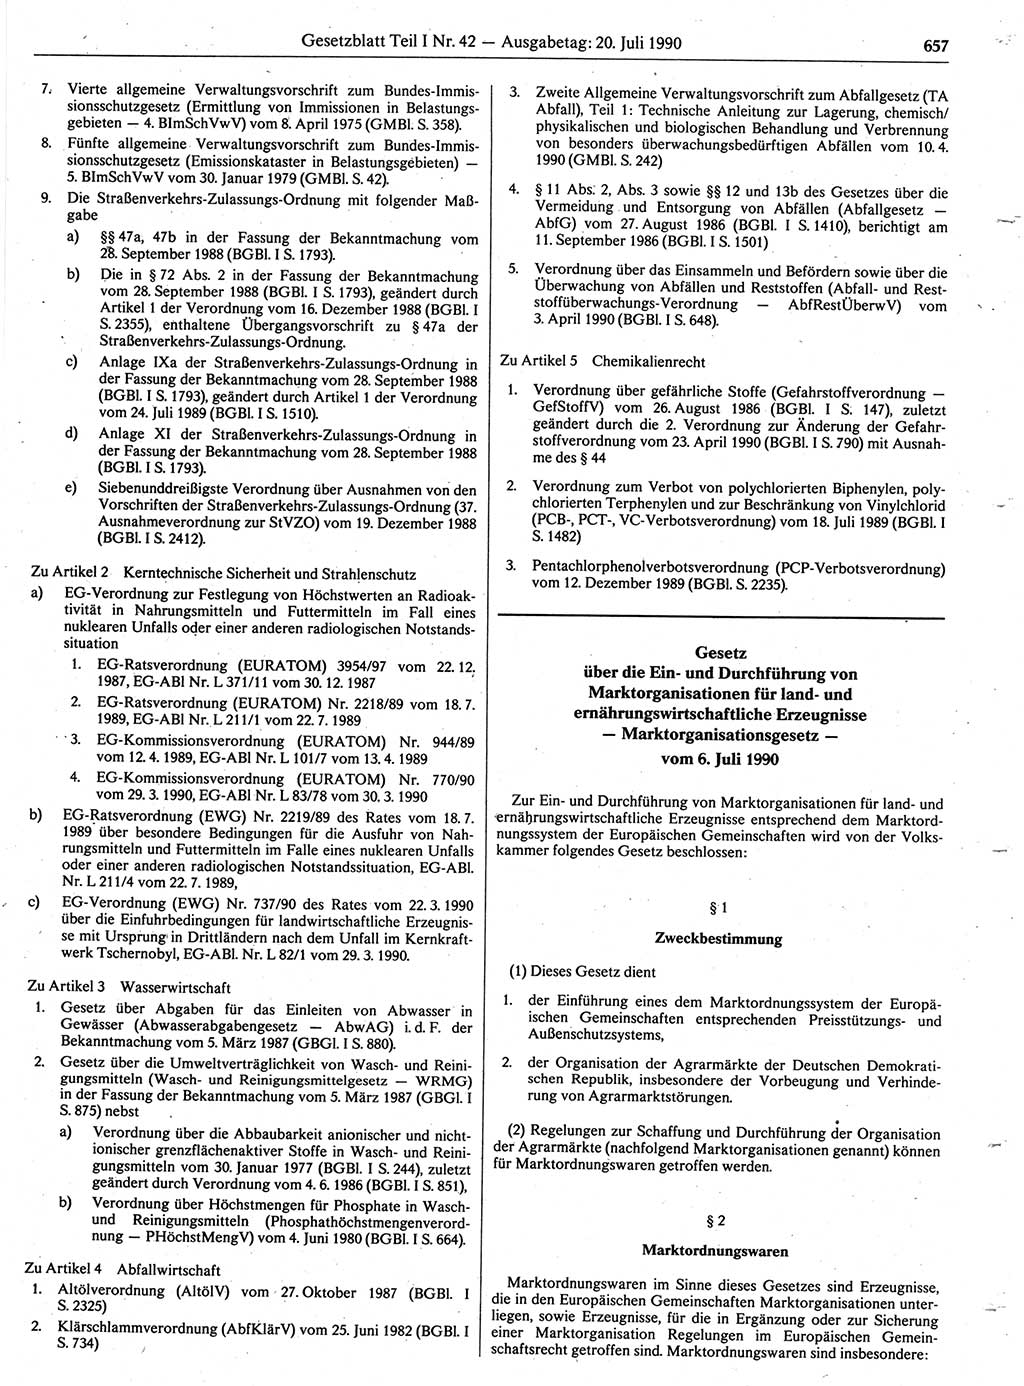 Gesetzblatt (GBl.) der Deutschen Demokratischen Republik (DDR) Teil Ⅰ 1990, Seite 657 (GBl. DDR Ⅰ 1990, S. 657)